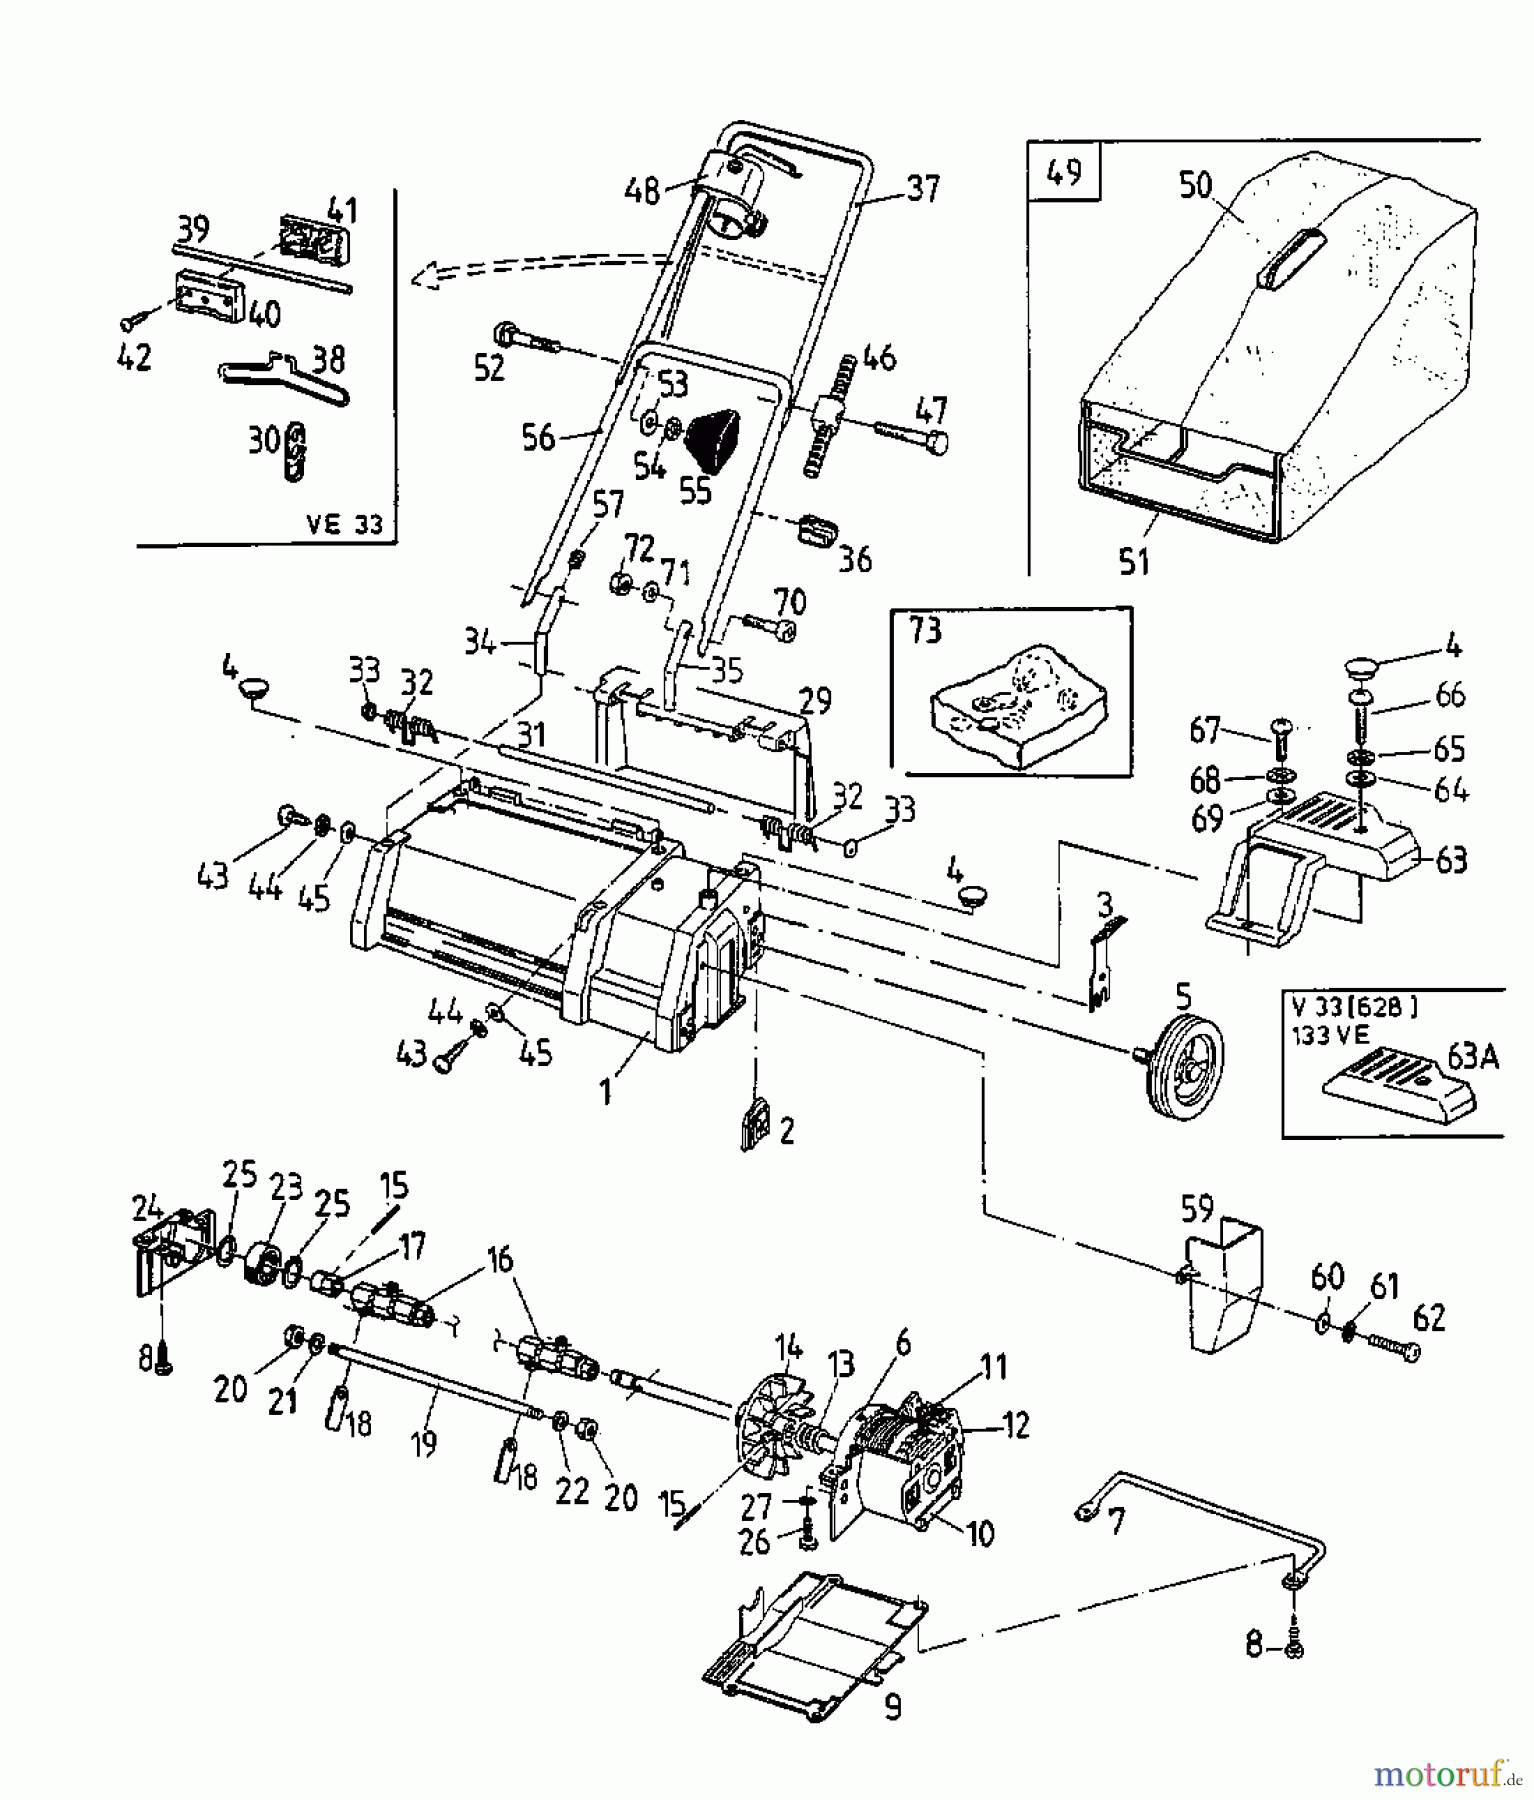  MTD Elektrovertikutierer V 33 16AEA0D-678  (1998) Grundgerät